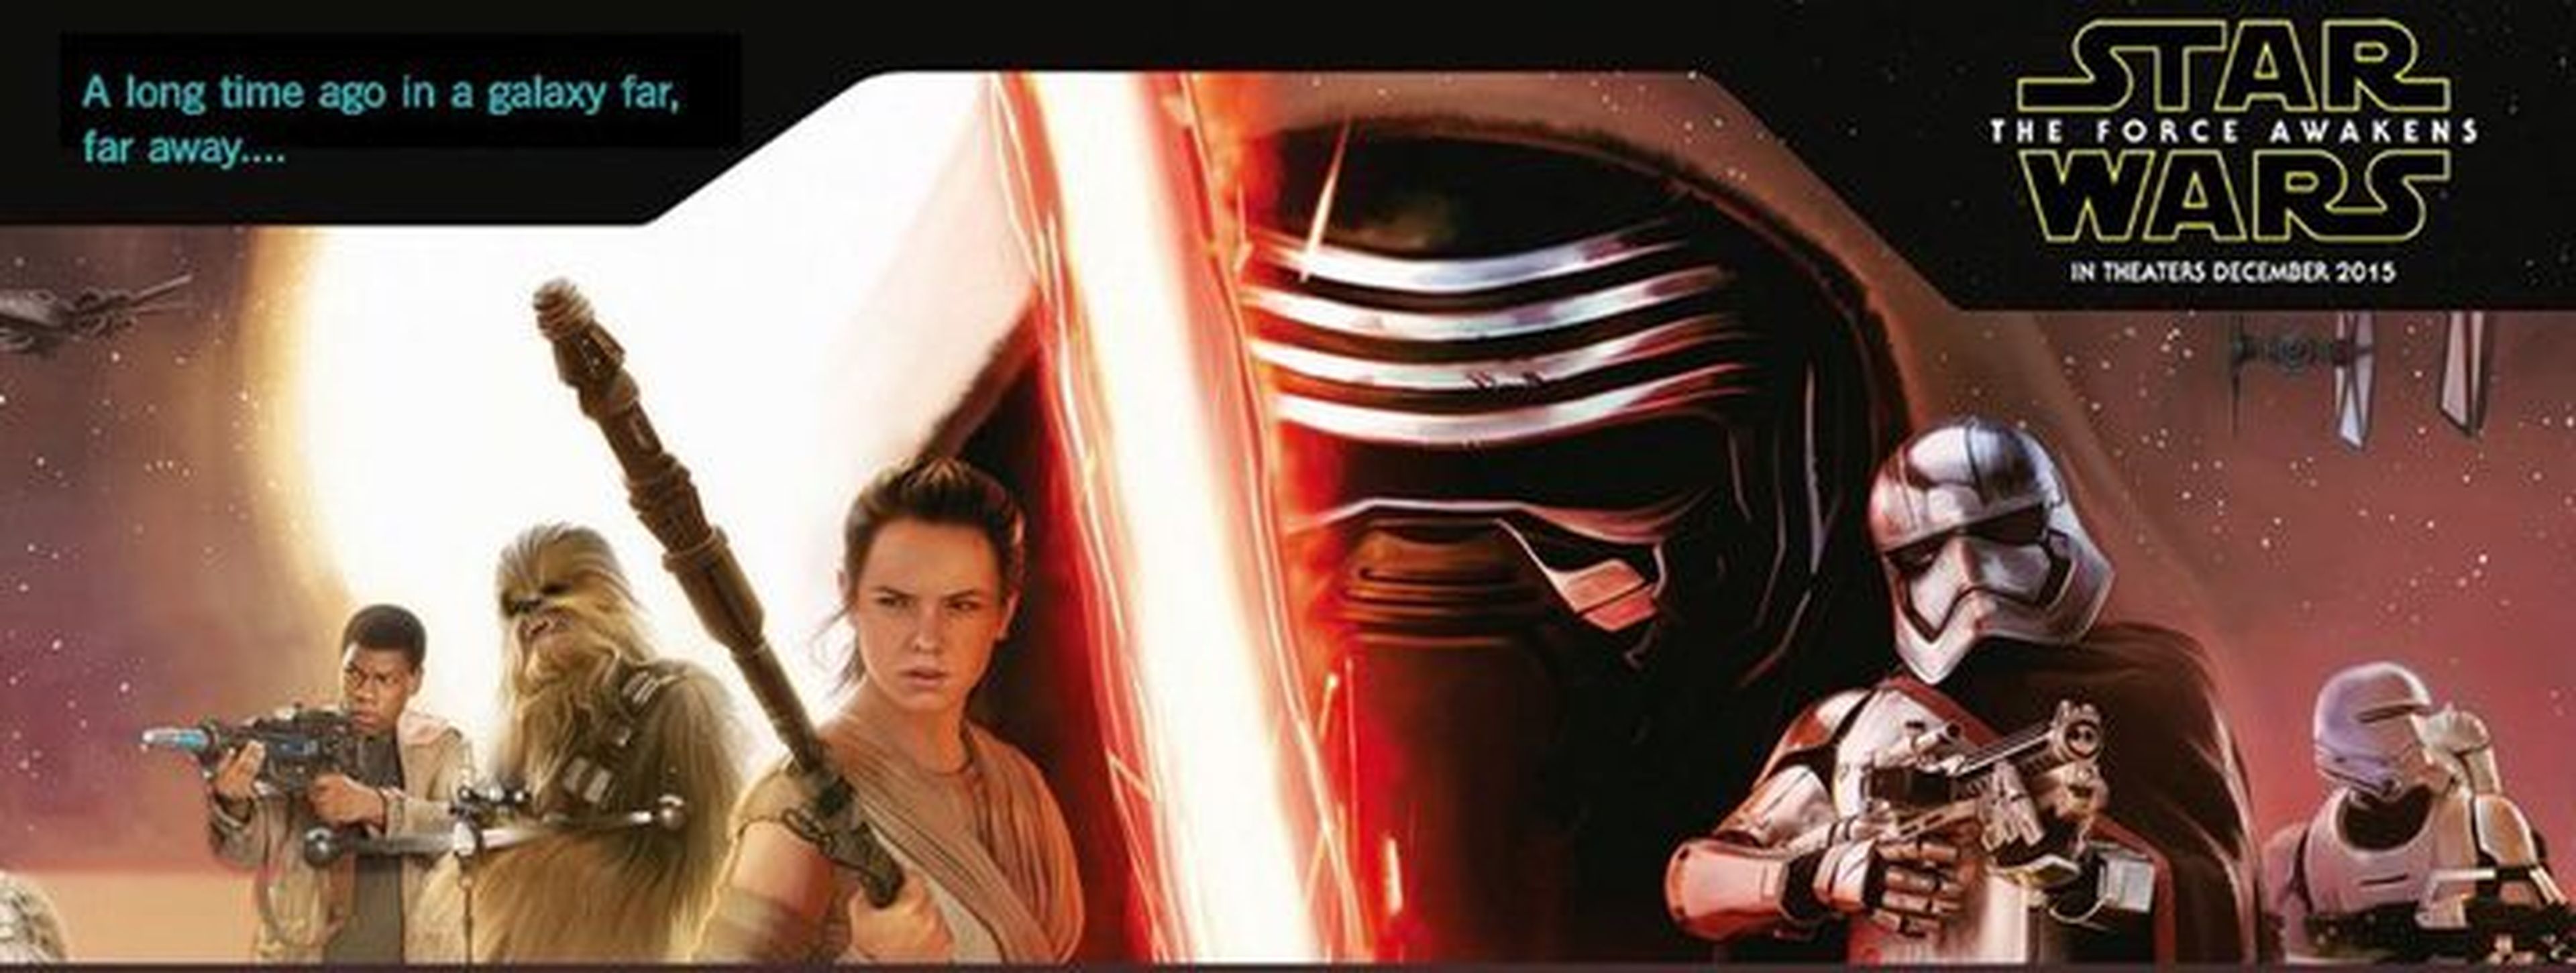 Star Wars: El despertar de la Fuerza: banner con John Boyega y Daisy Ridley